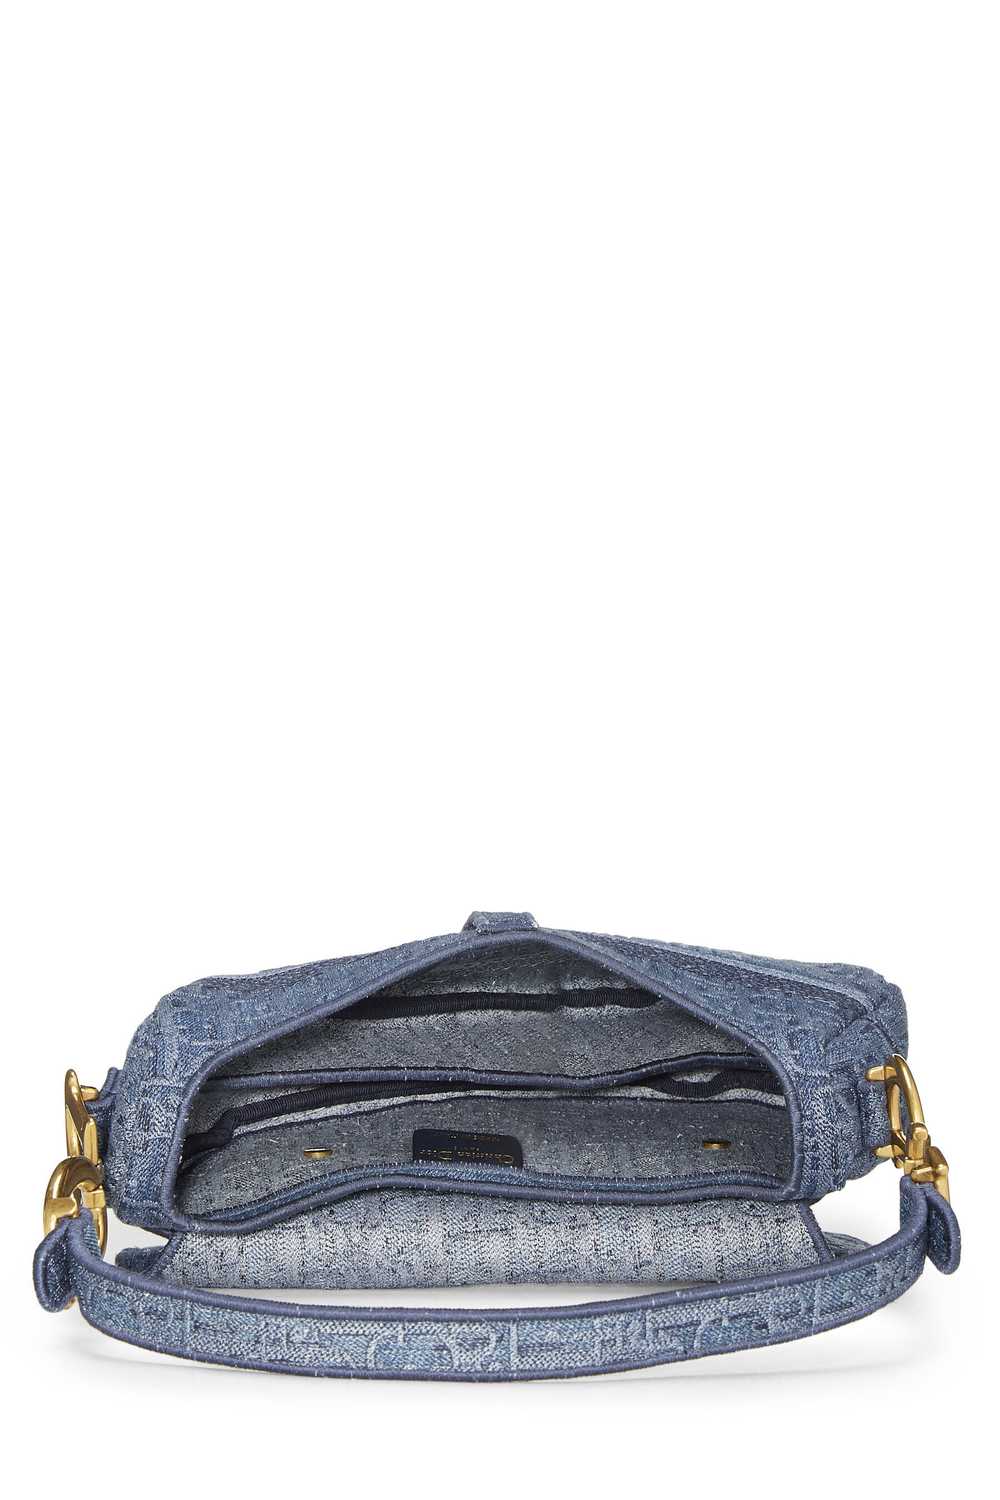 Blue Oblique Denim Saddle Bag - image 6